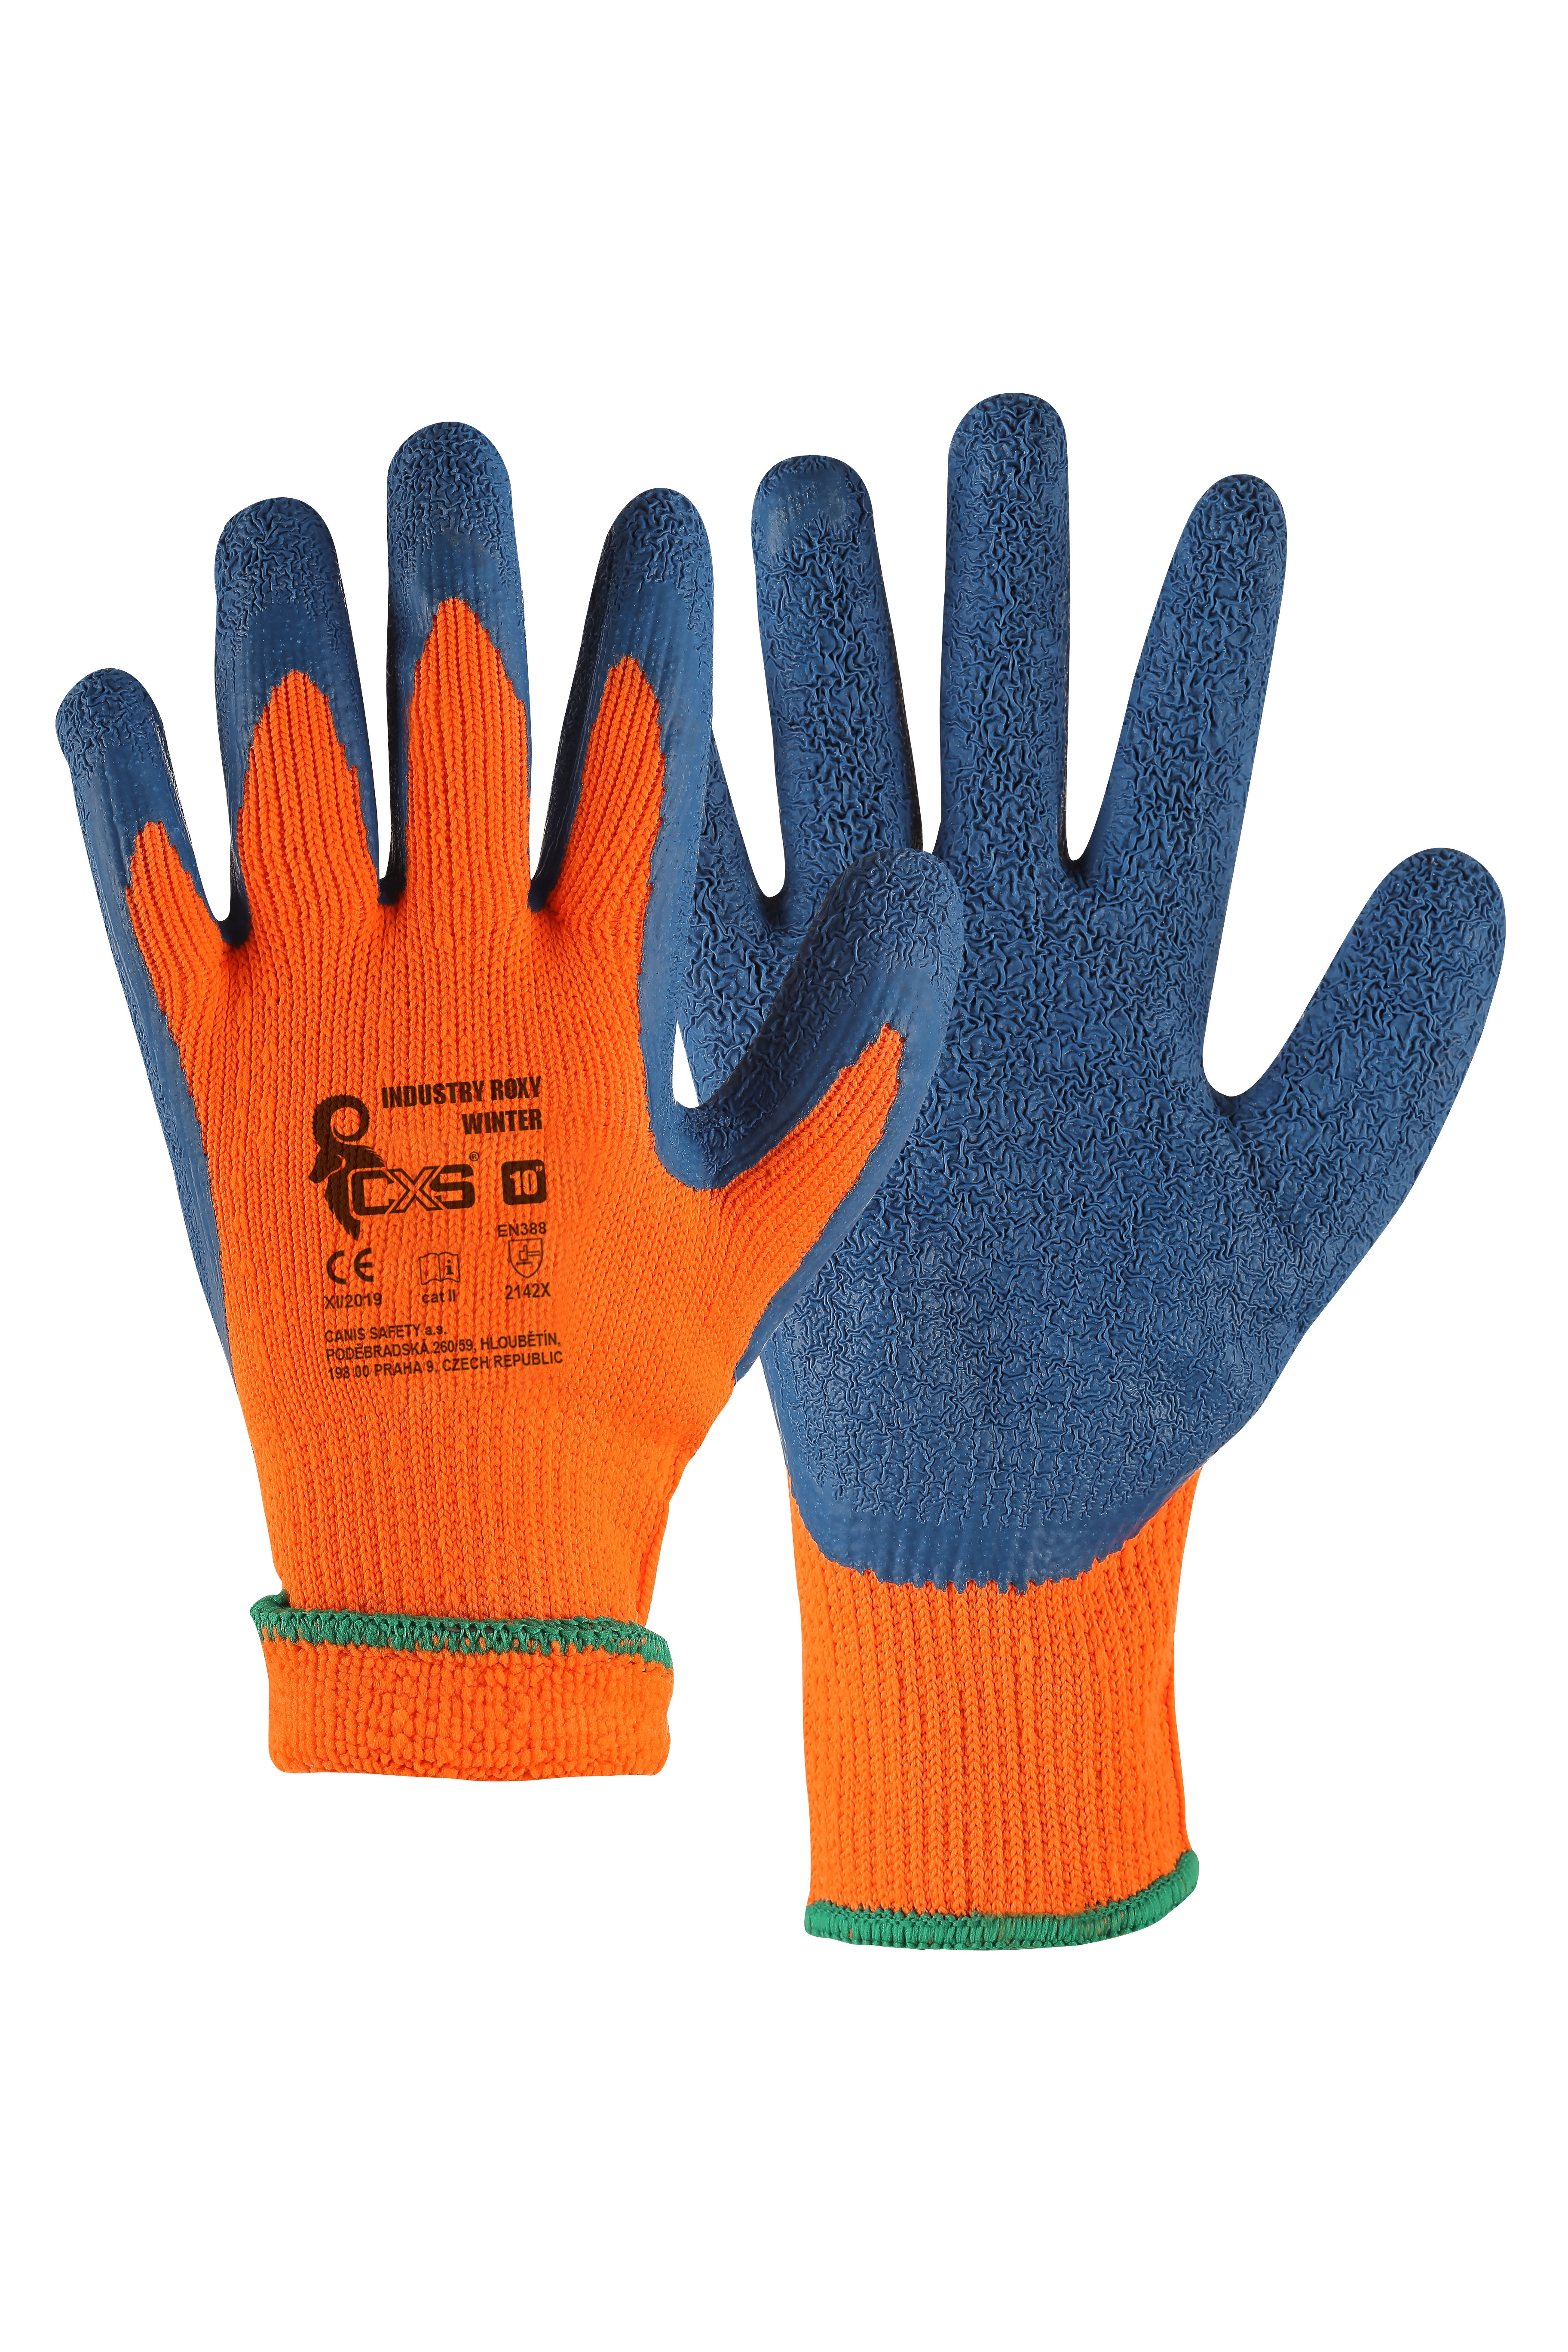 rukavice Industry Roxy Winter, zimní, máčené v latexu, velikost 10 0.09 Kg TOP Sklad4 606065 617